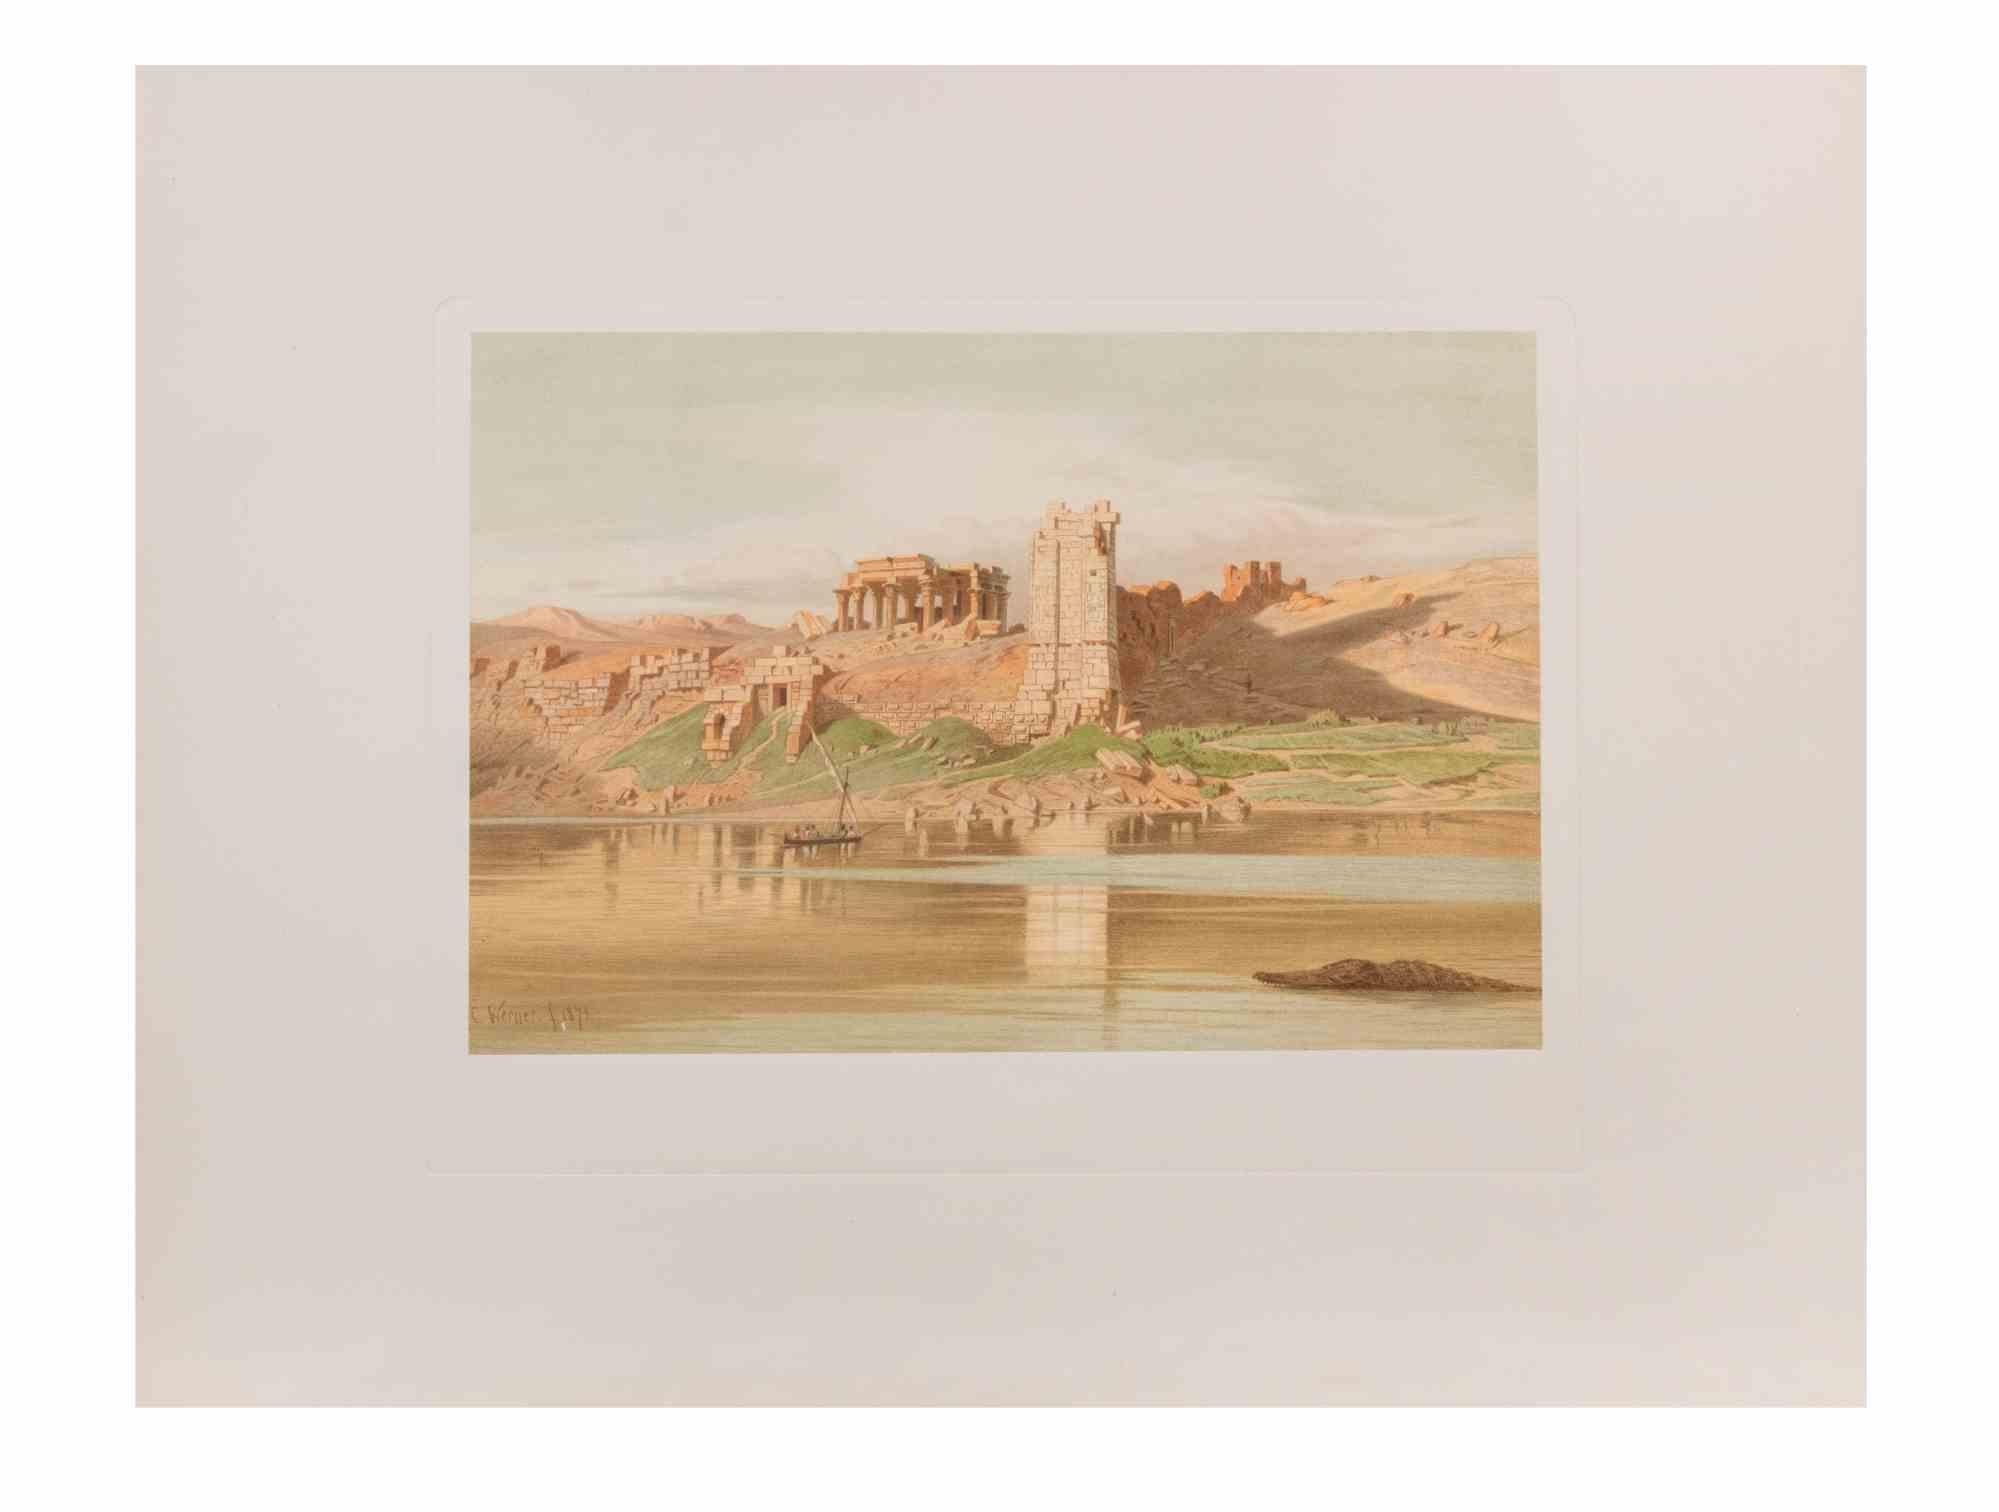 Ägypten ist ein modernes Kunstwerk, das d'apres Karl Werner 

Gemischtfarbige Chromolithographie. 

Das Werk ist nach einem Aquarell gestaltet, das der Künstler während einer Reise nach Ägypten zwischen 1862 und 1865 anfertigte.

Die vorliegende